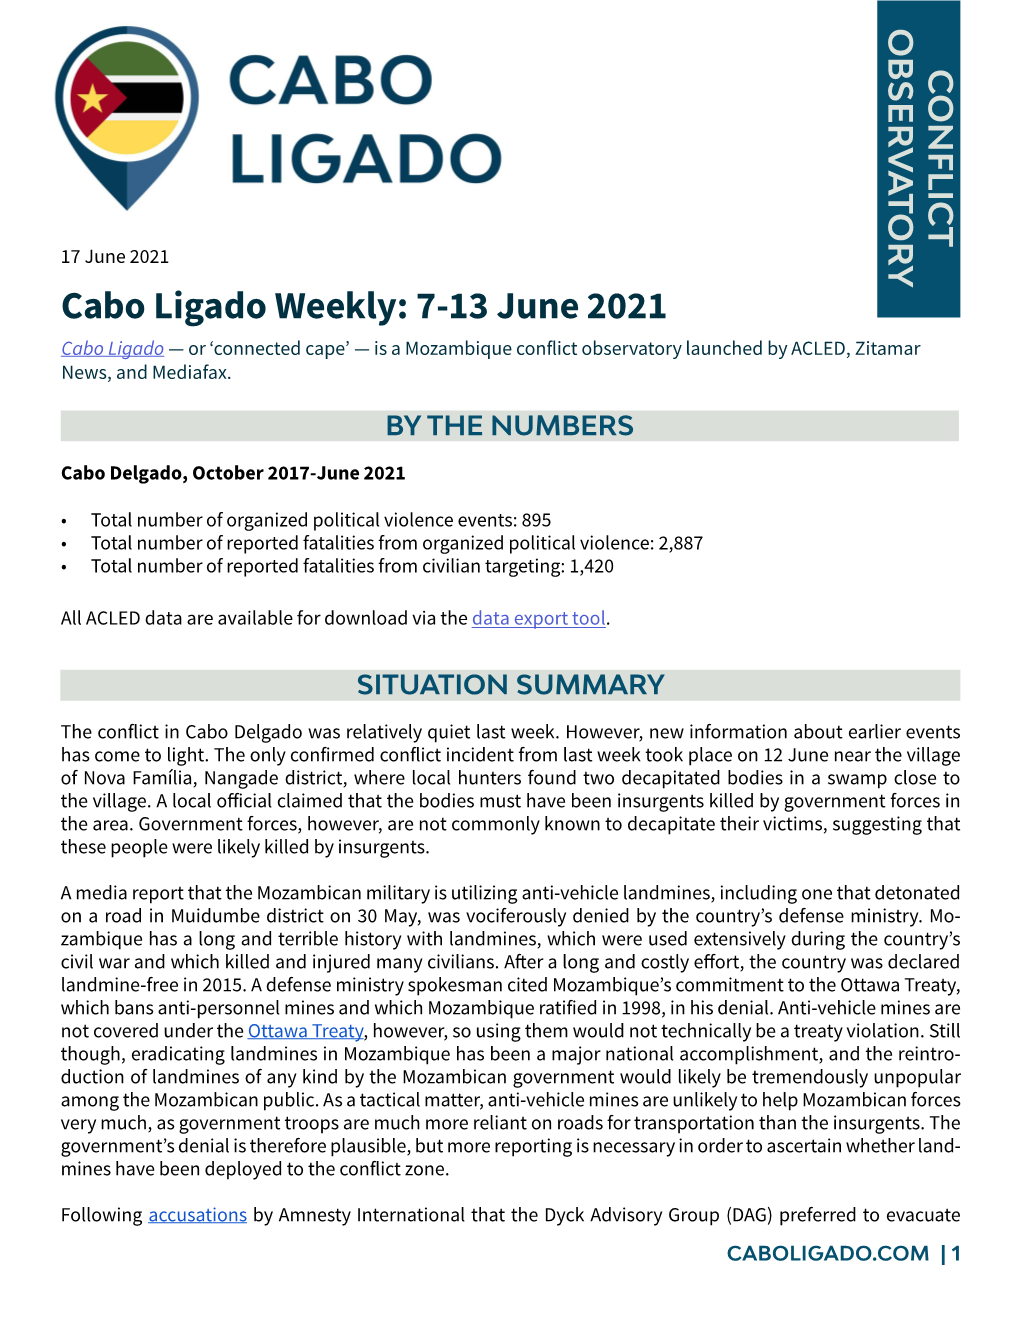 Cabo Ligado Weekly: 7-13 June 2021